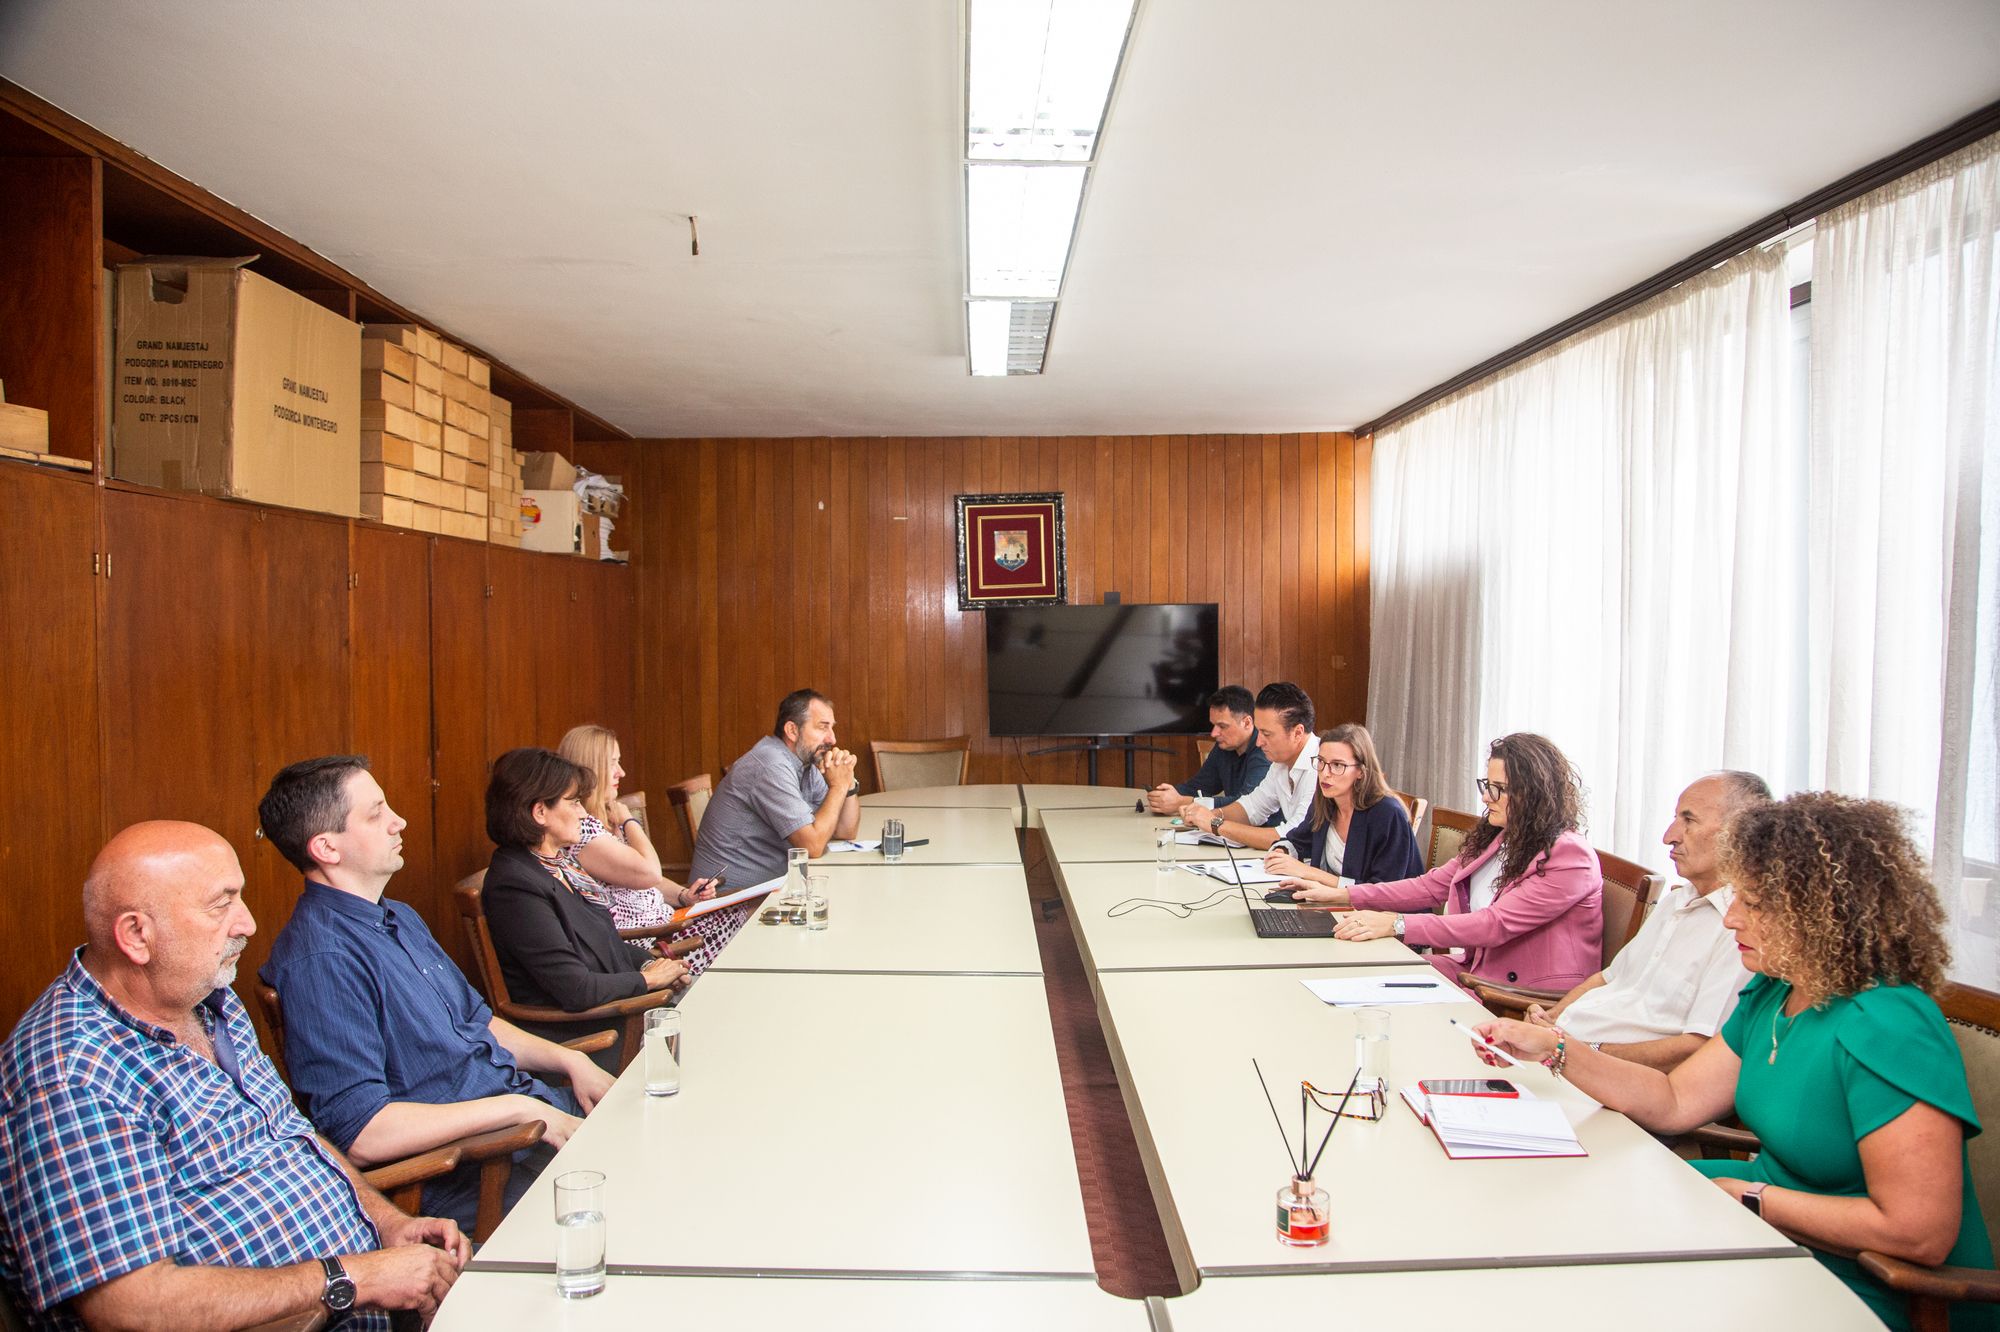 Kuvendi i Komunës së Ulqinit dhe Qendra për Kulturë mikpritën delegacionin nga Biblioteka Kombëtare e Malit të Zi 